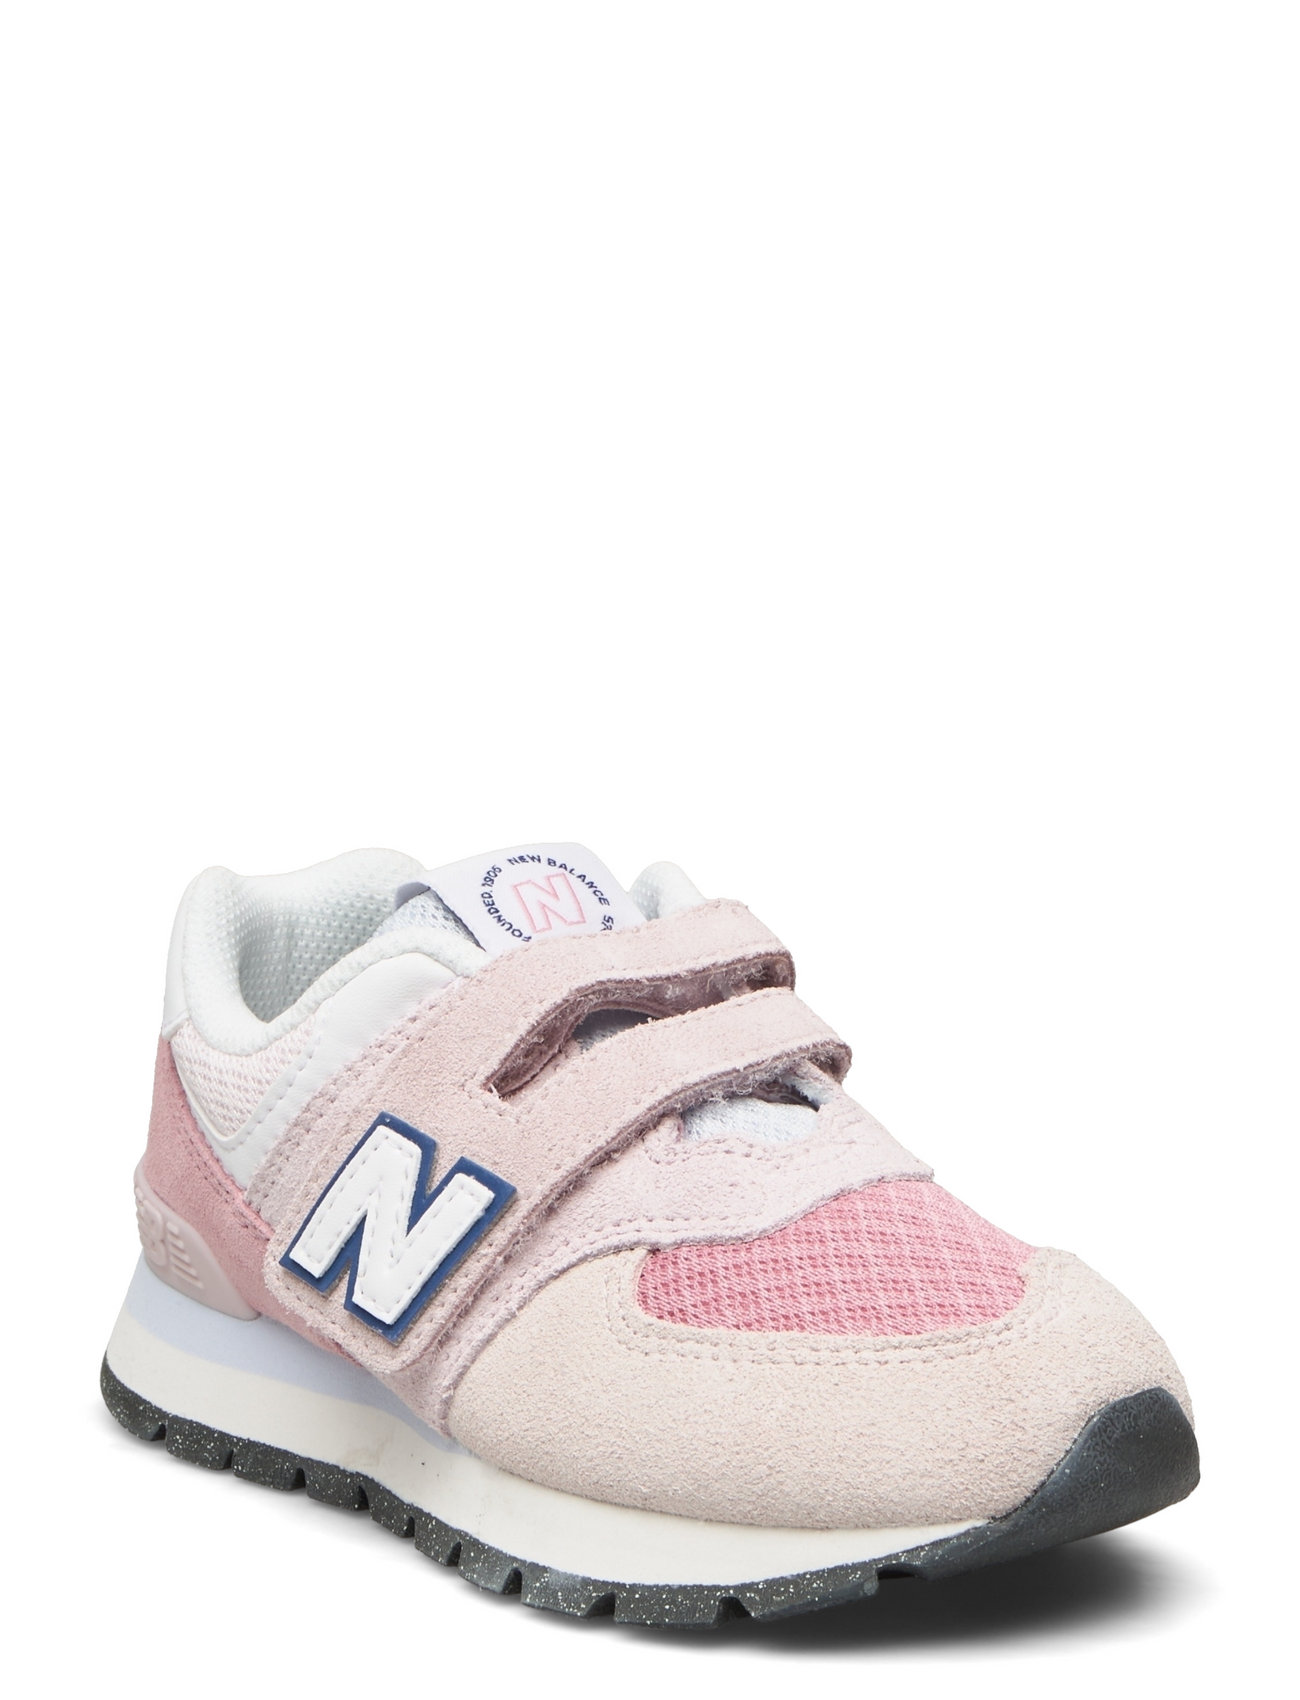 New Balance 574 Kids Hook & Loop Sport Sneakers Low-top Sneakers Pink New Balance